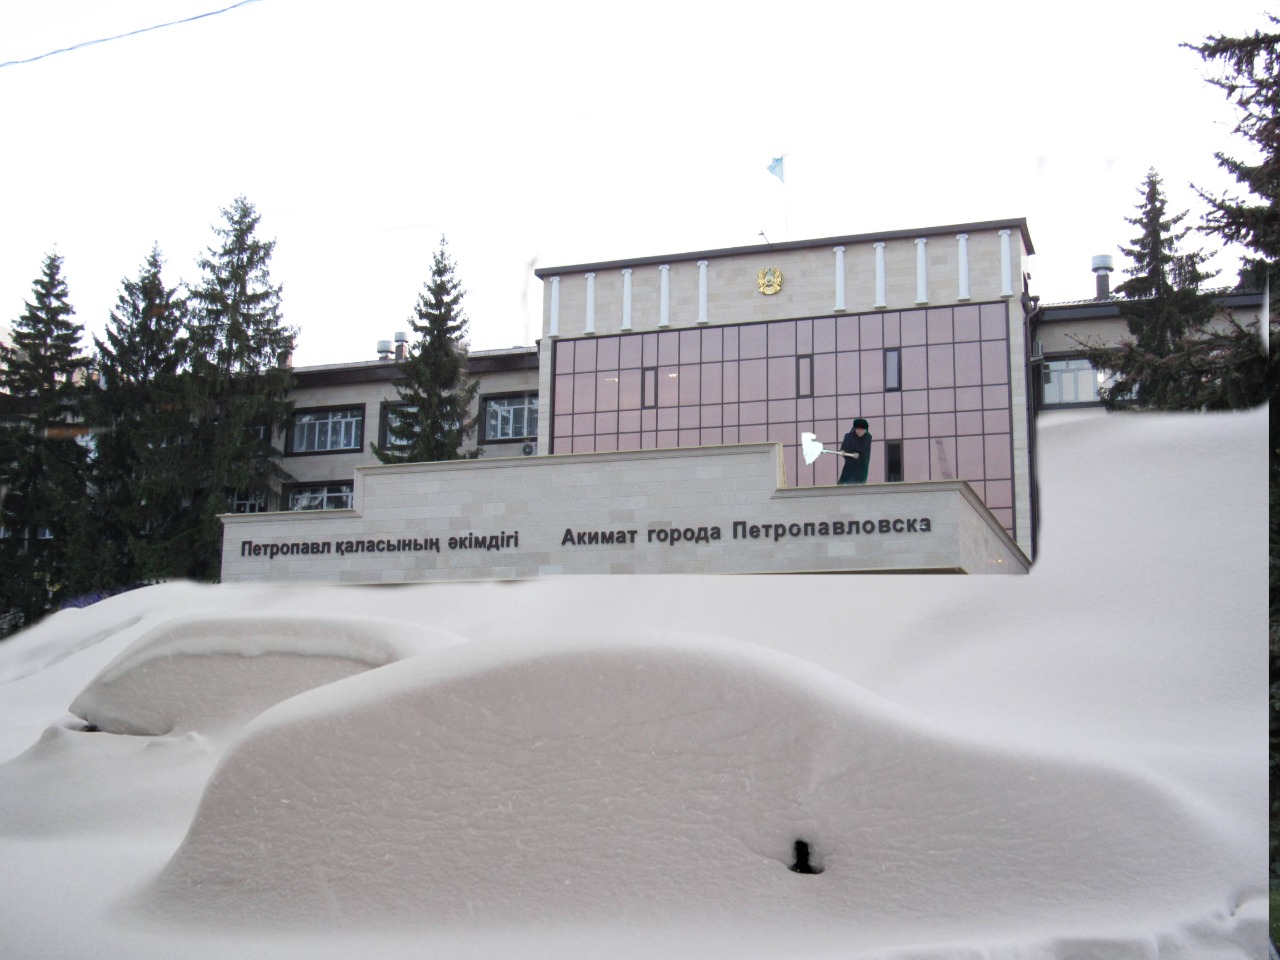 Снежные кубометры акима Петропавловска